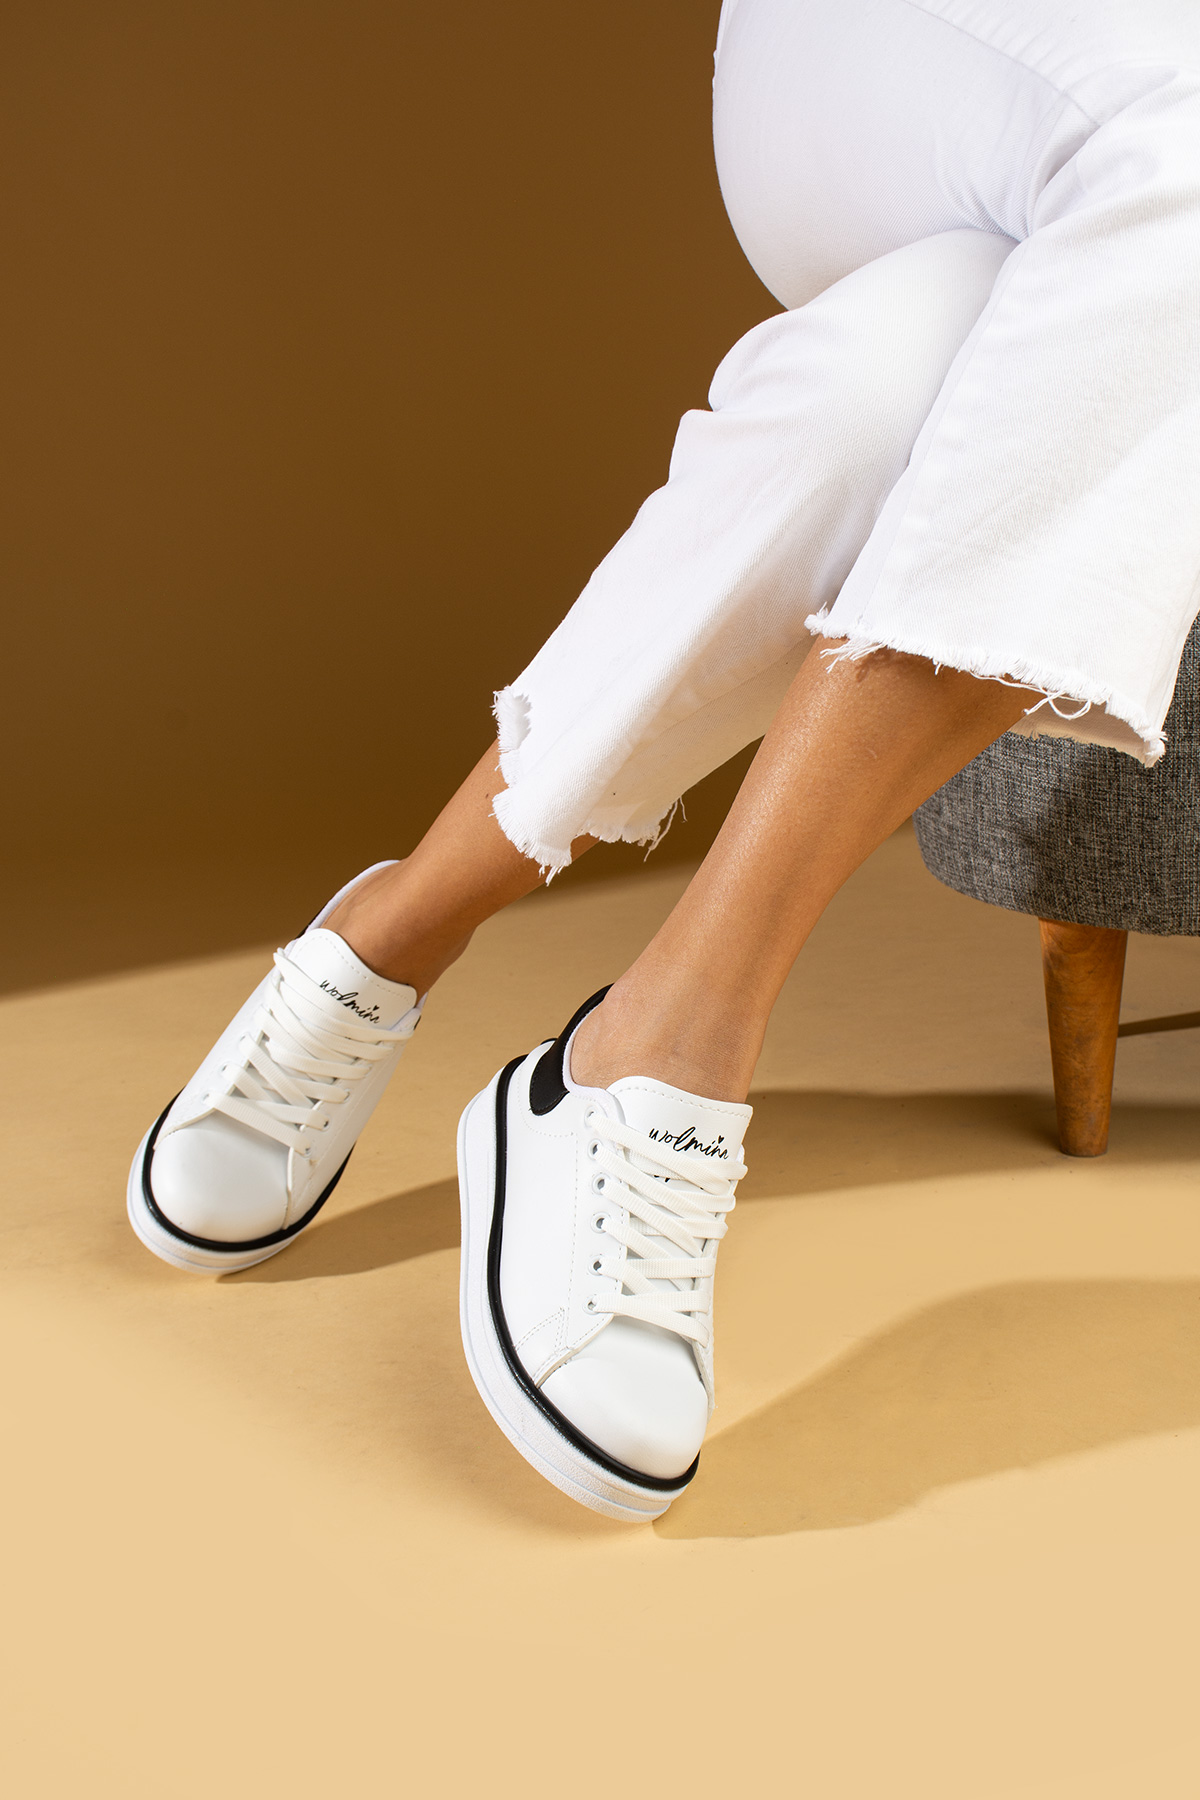 Pembe Potin Rahat Taban Renk Şeritli Bağcıklı Kadın Sneaker 001-340-24BSiyah - Beyaz